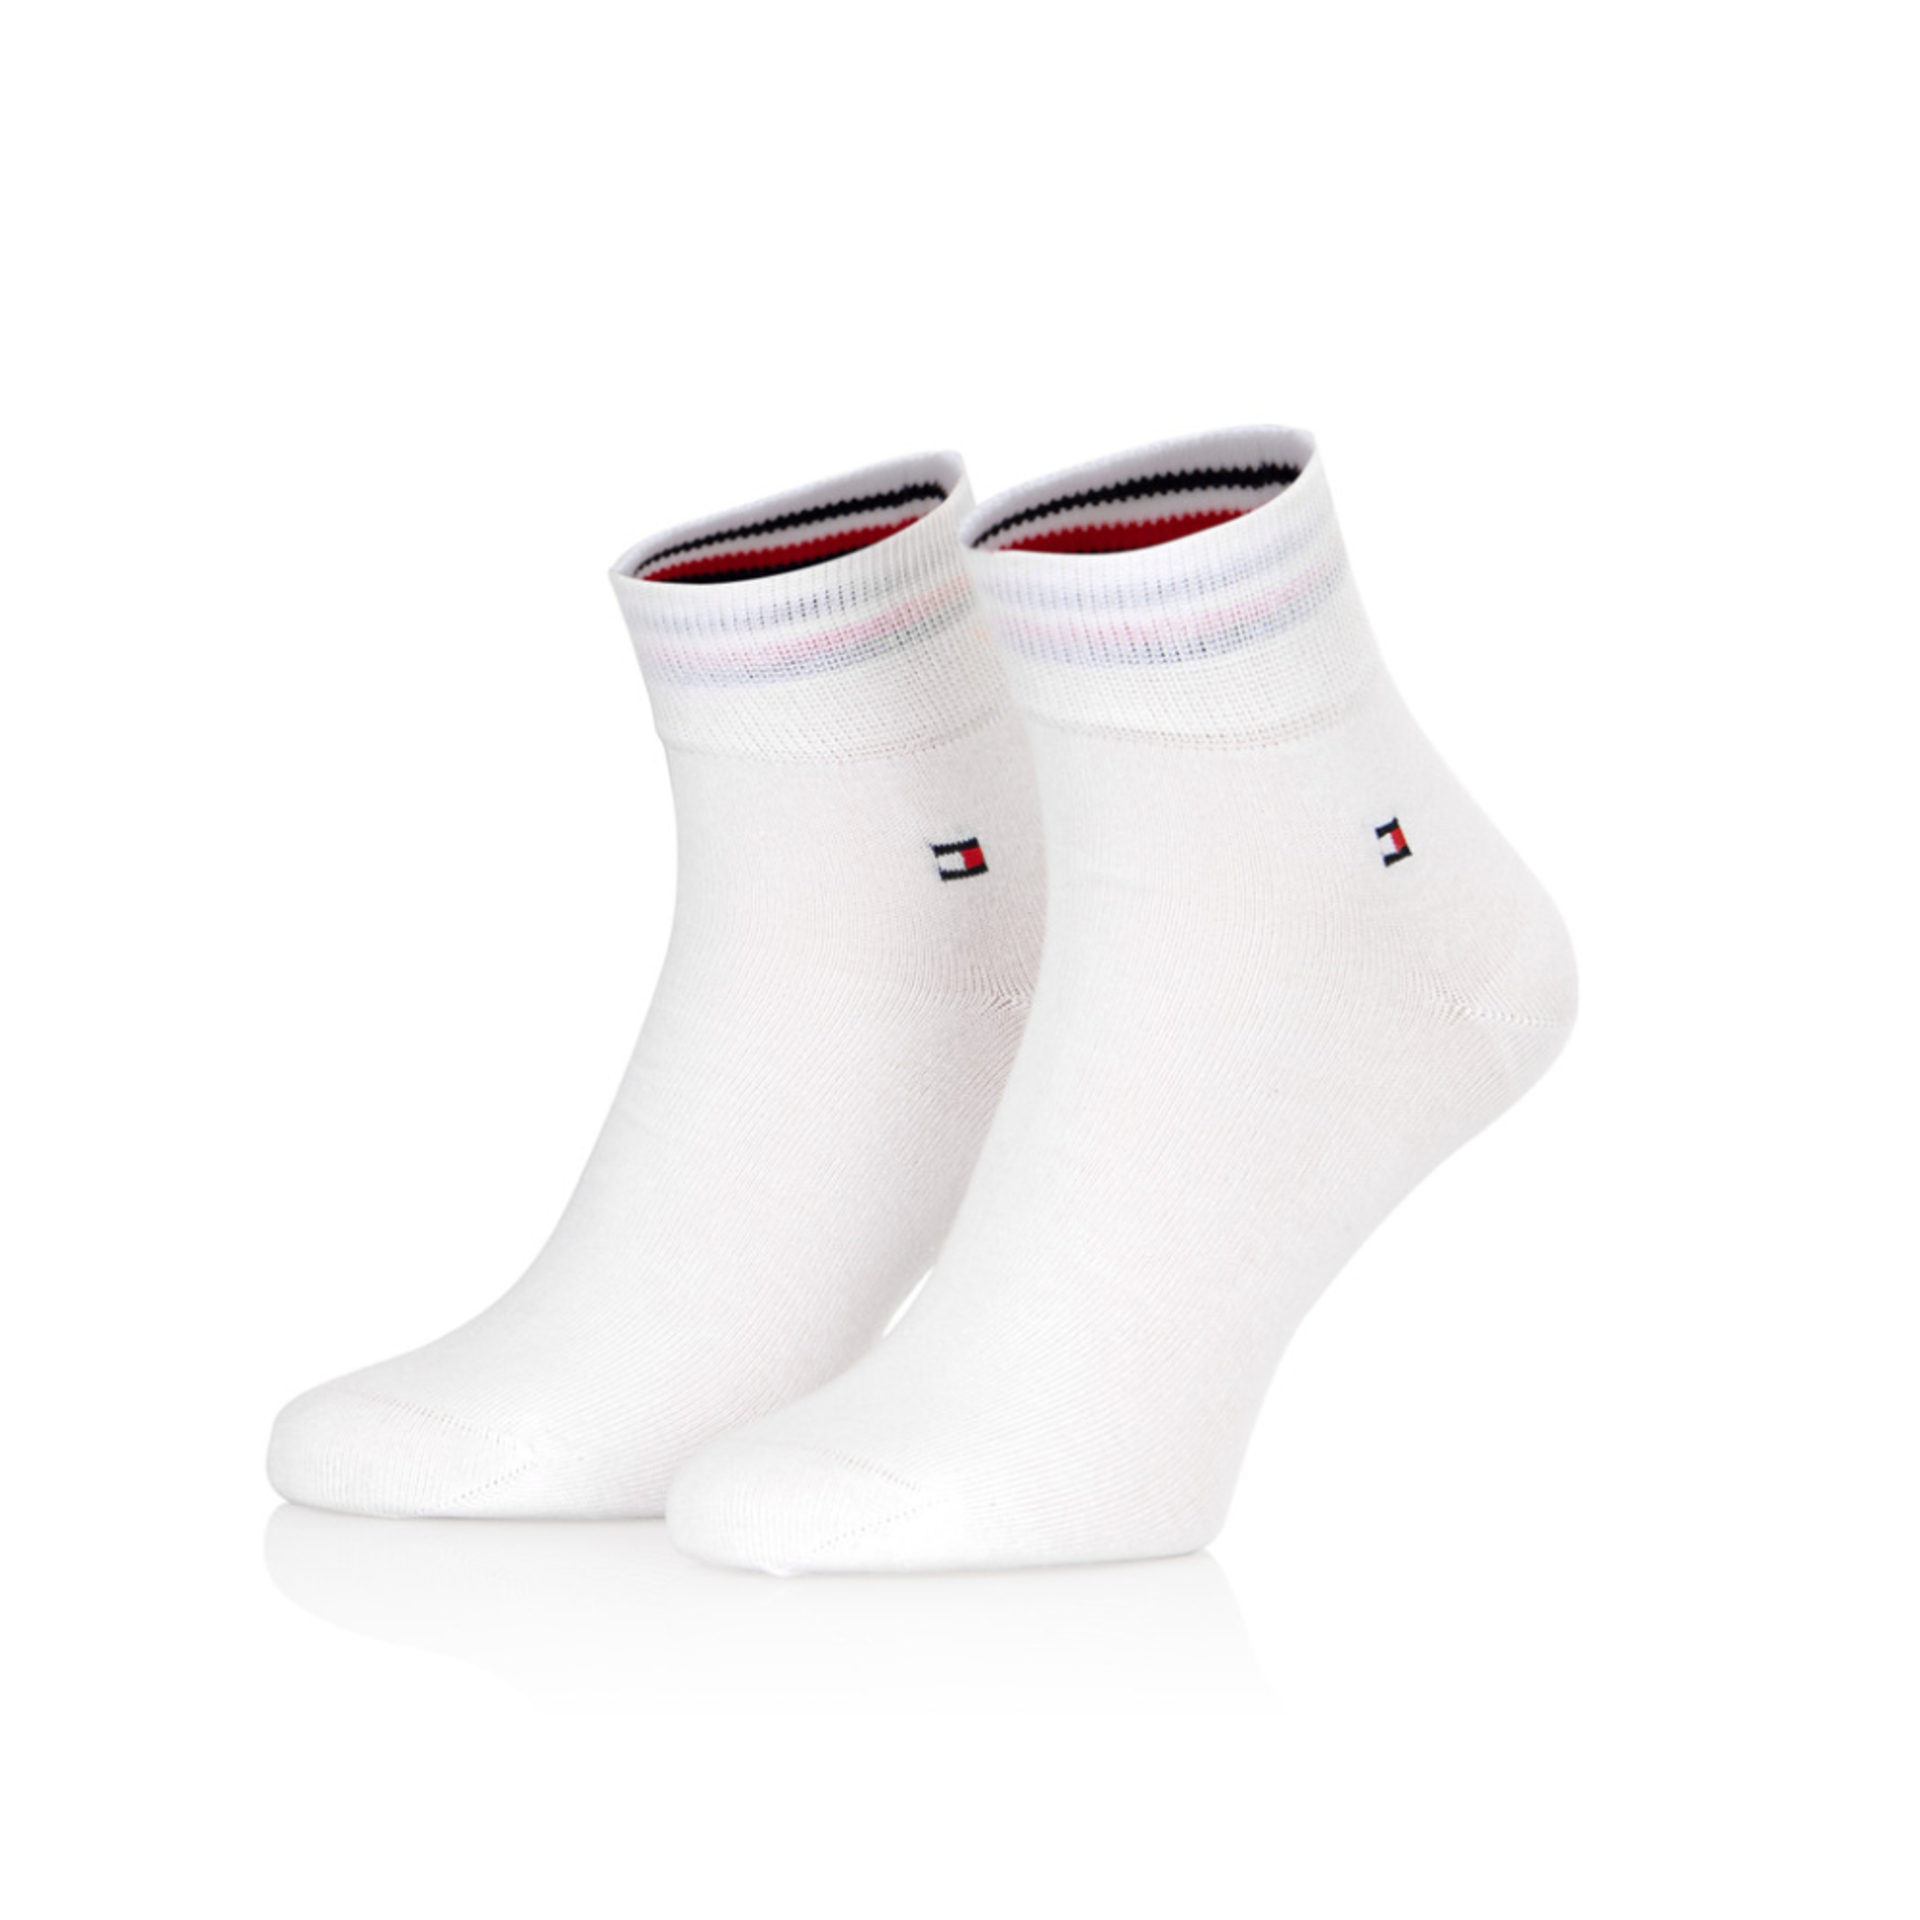 Tommy Hilfiger pánske biele ponožky 2 pack - 47 (300)